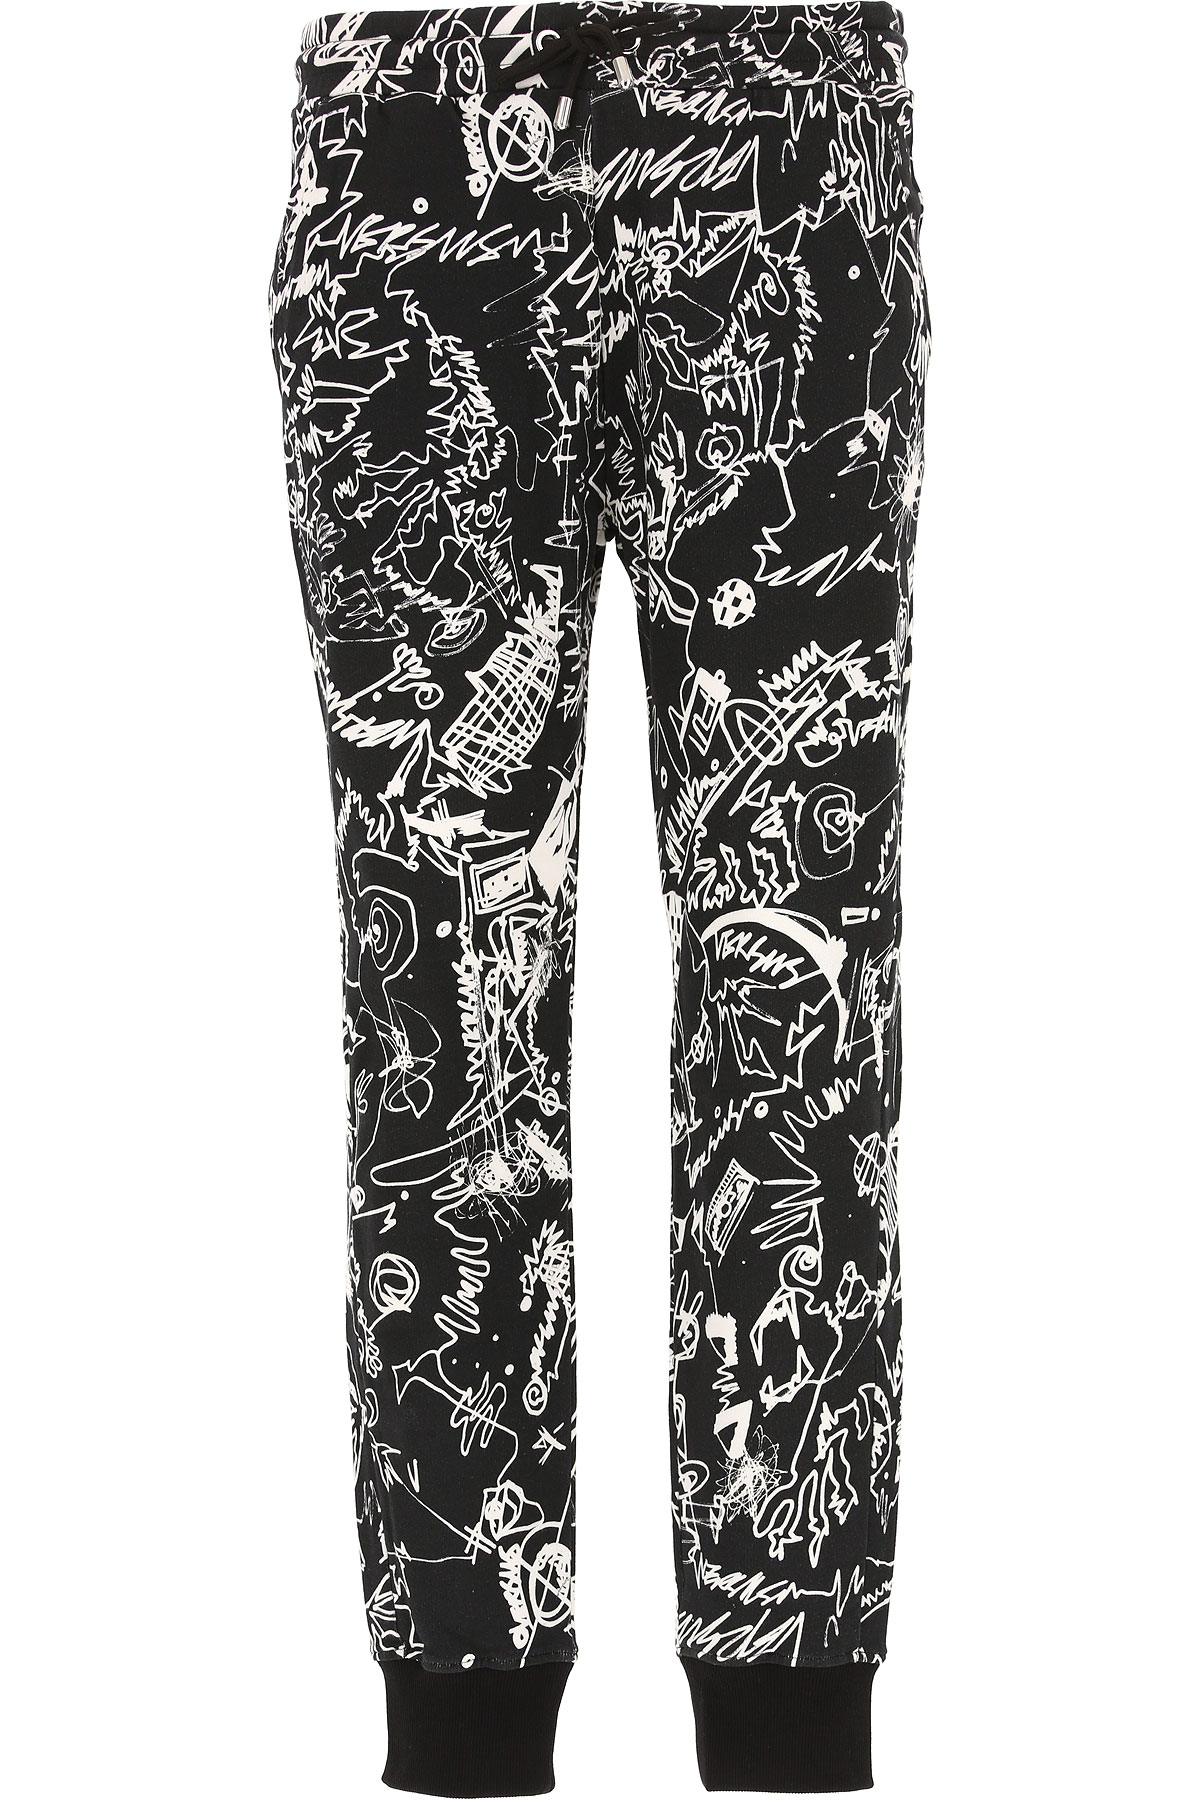 Versace Pantalon Homme, Noir, Coton, 2017, L M S XL